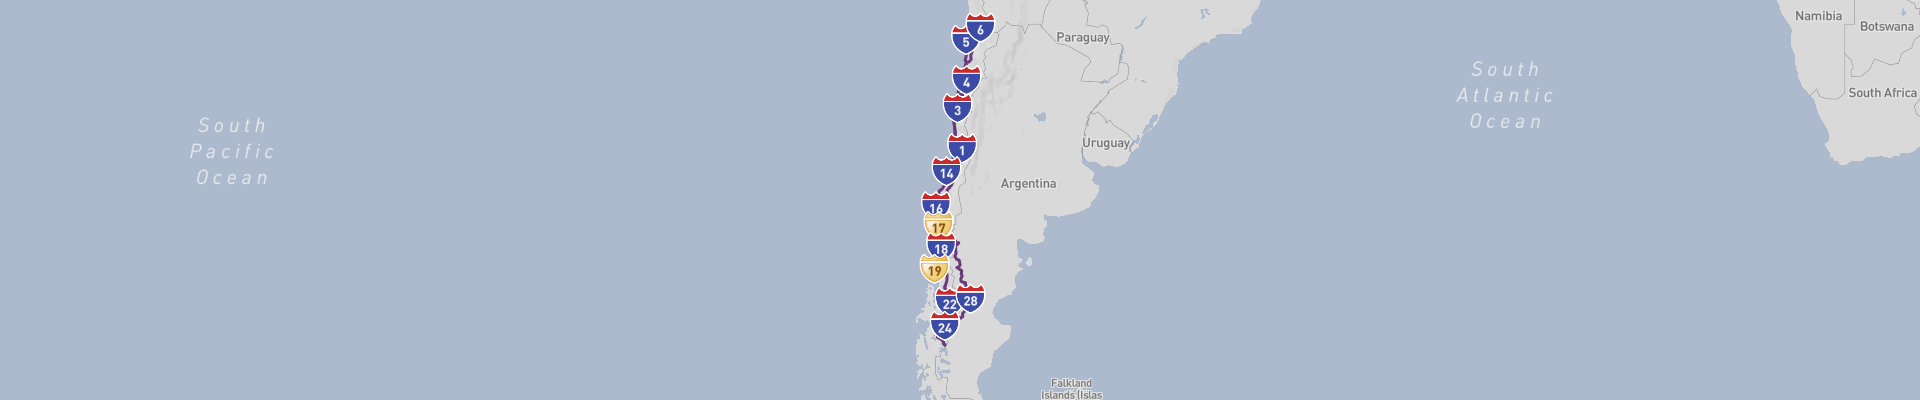 Chile Roadtrip